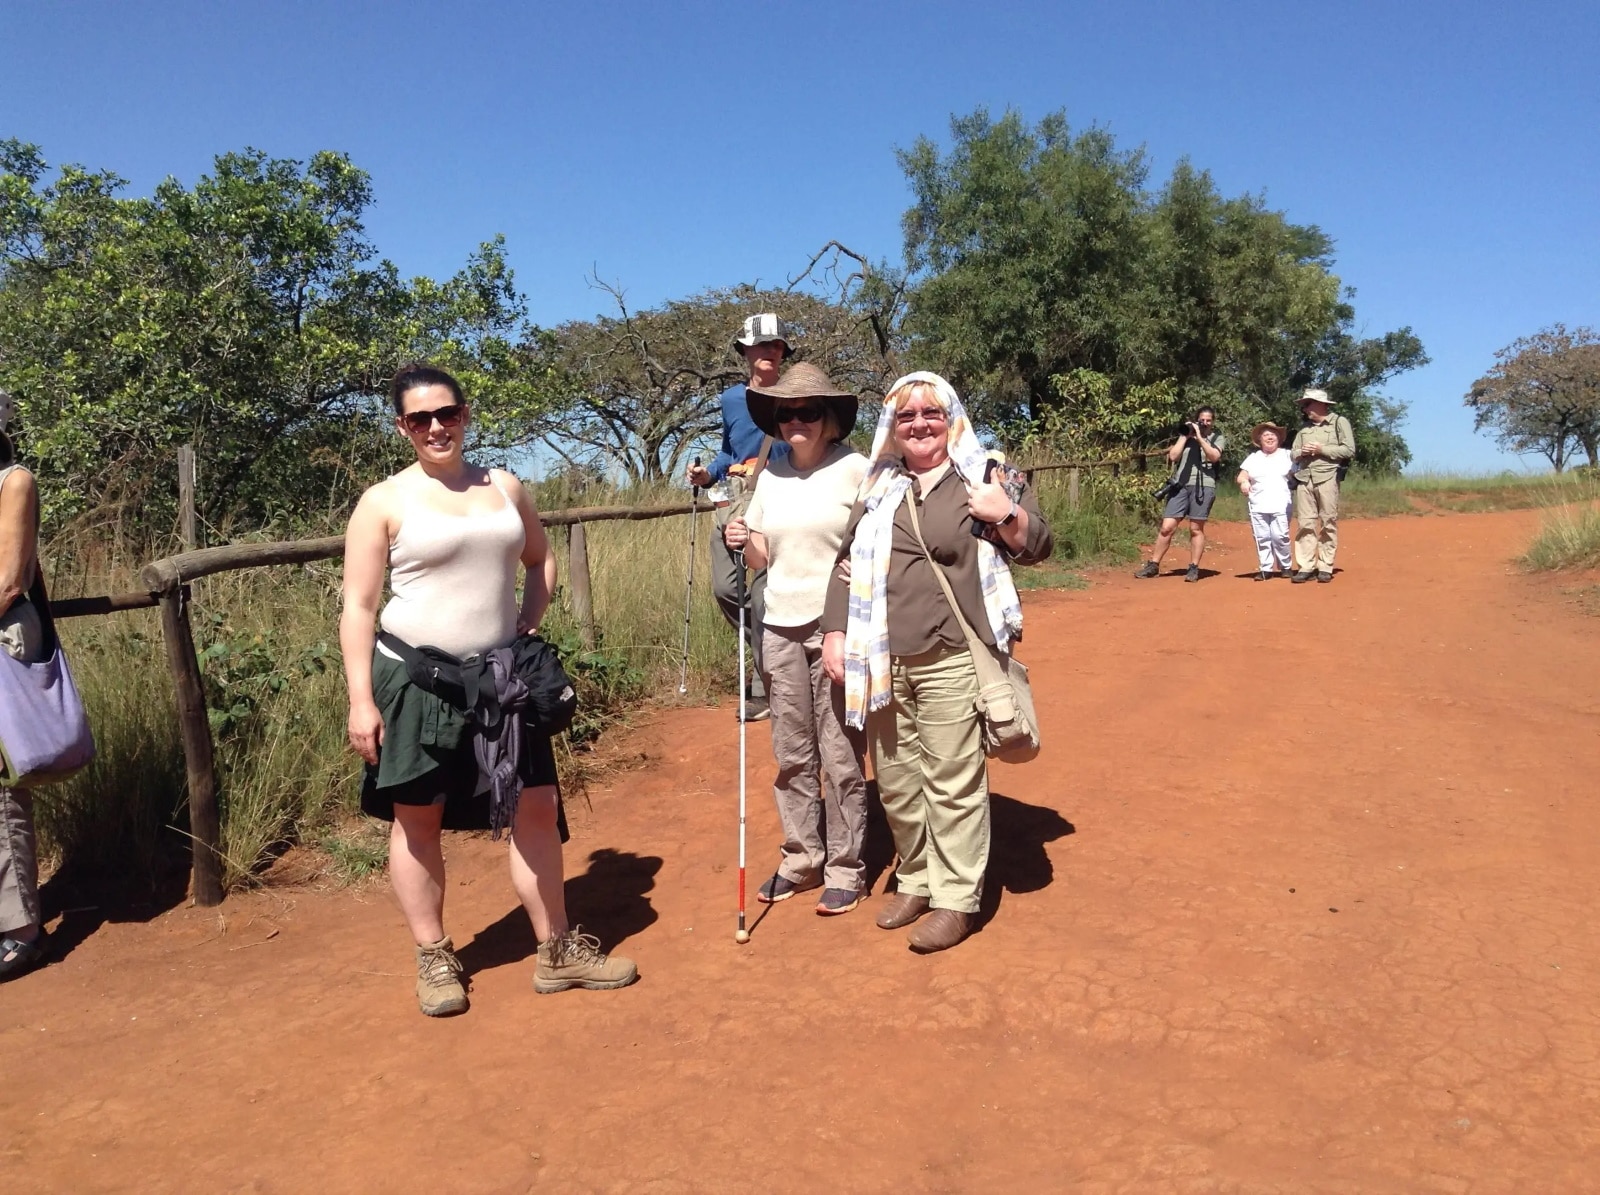 Group walking safari in Eswatini